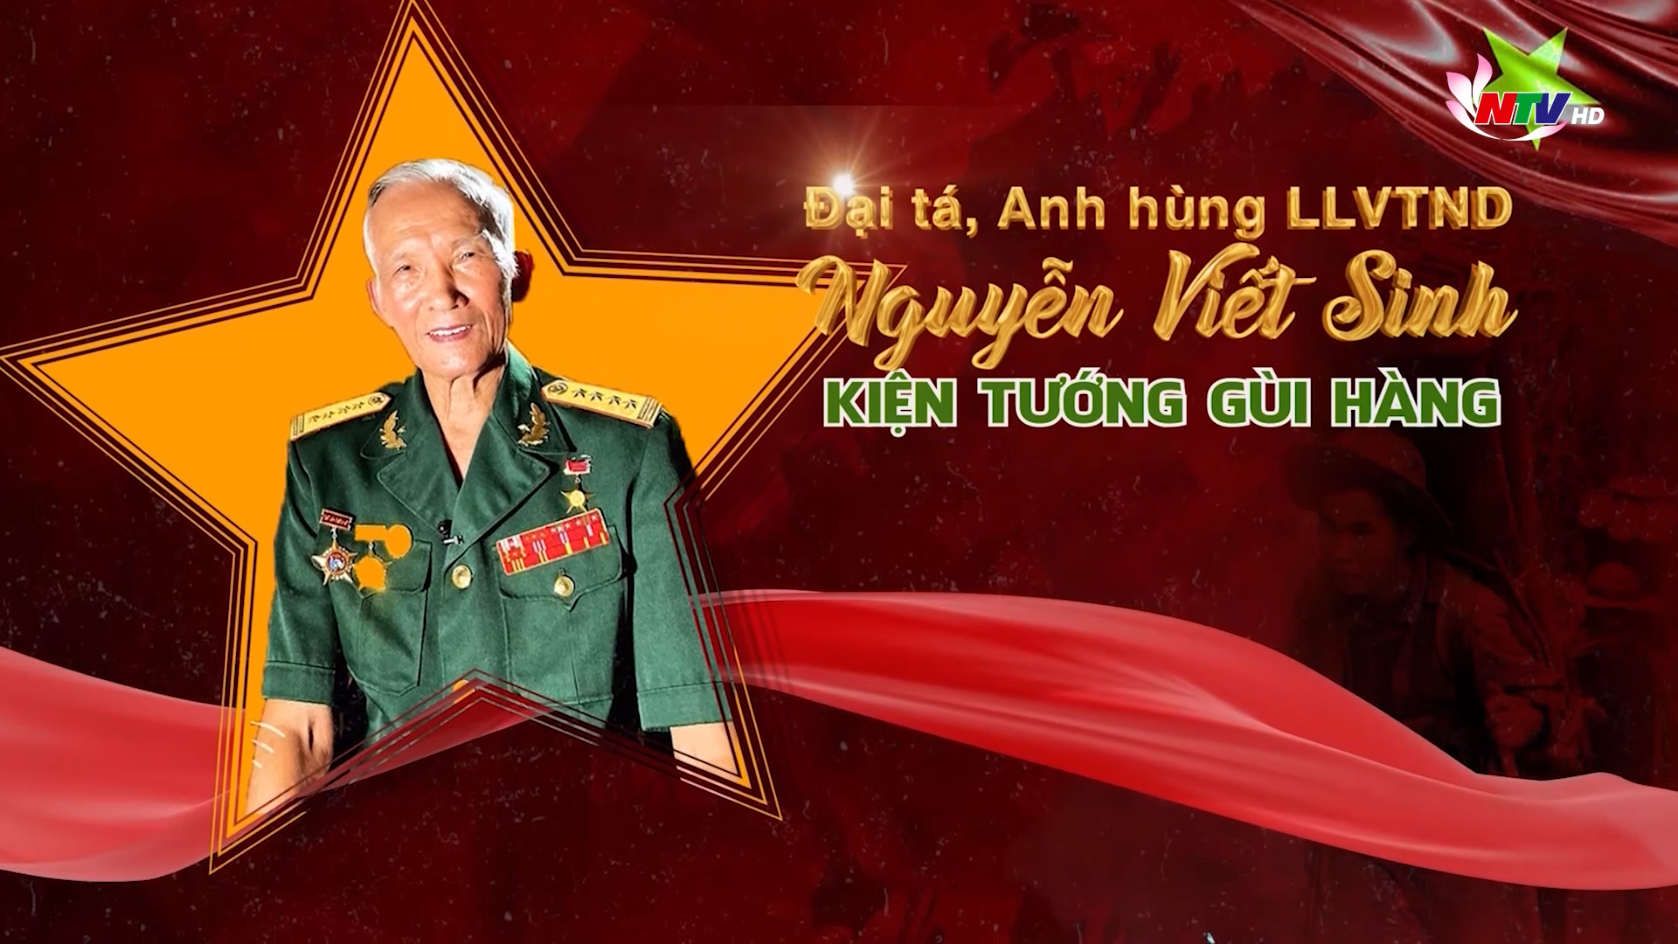 Trò chuyện cuối tuần: Đại tá, Anh hùng LLVTND Nguyễn Viết Sinh - Kiện tướng gùi hàng